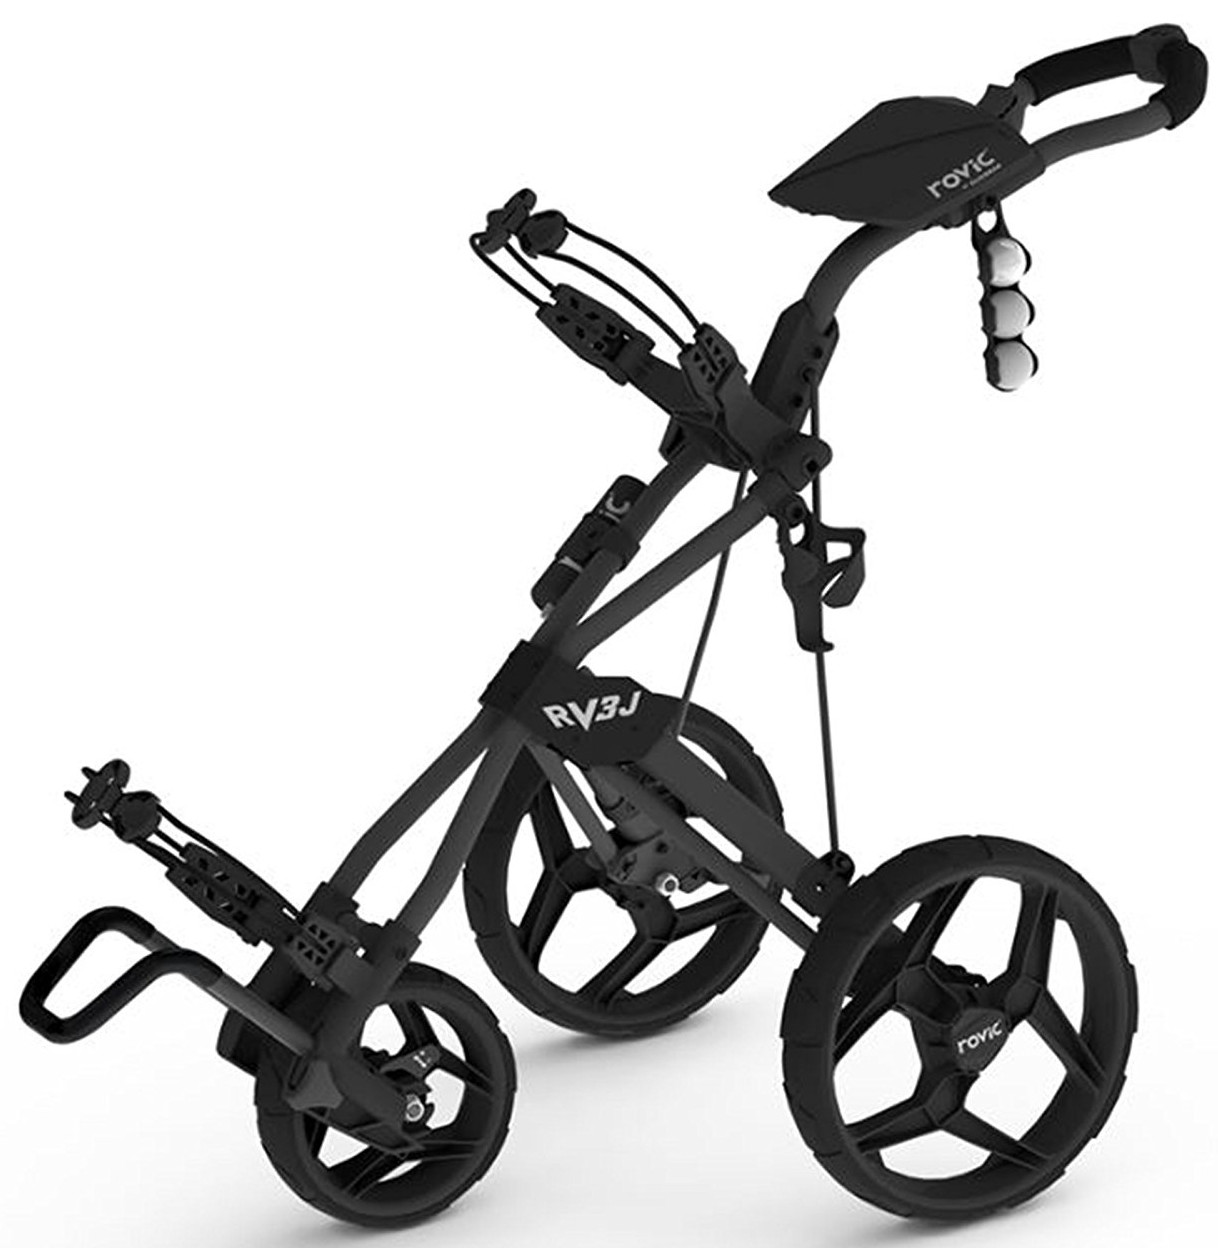 Clickgear Rovic RV3J Junior Golf Push Carts